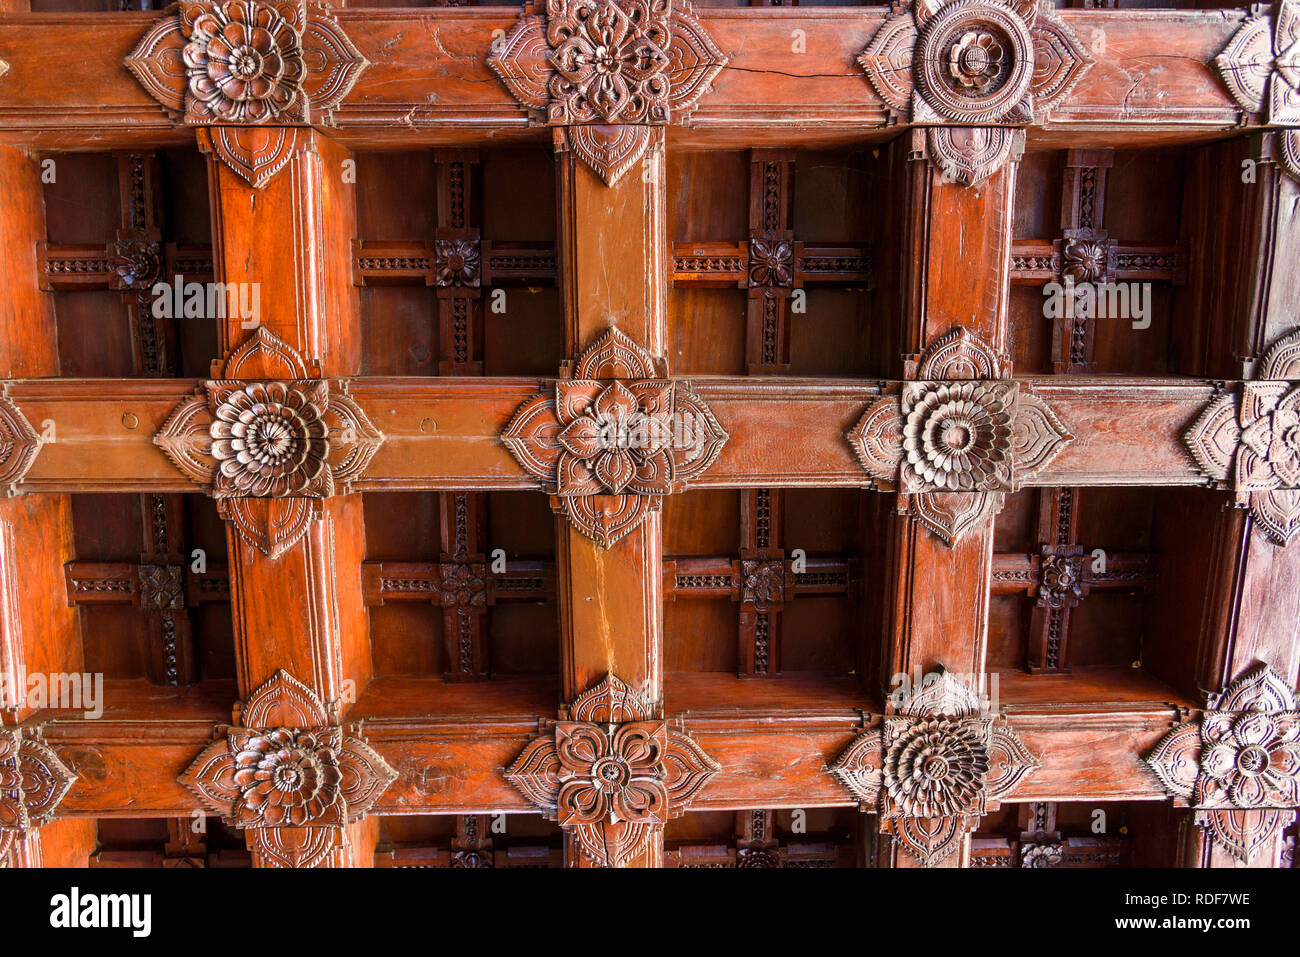 Ornato soffitto in legno, Padmanabhapuram Palace, tipica architettura del Kerala, Tamil Nadu, India Foto Stock